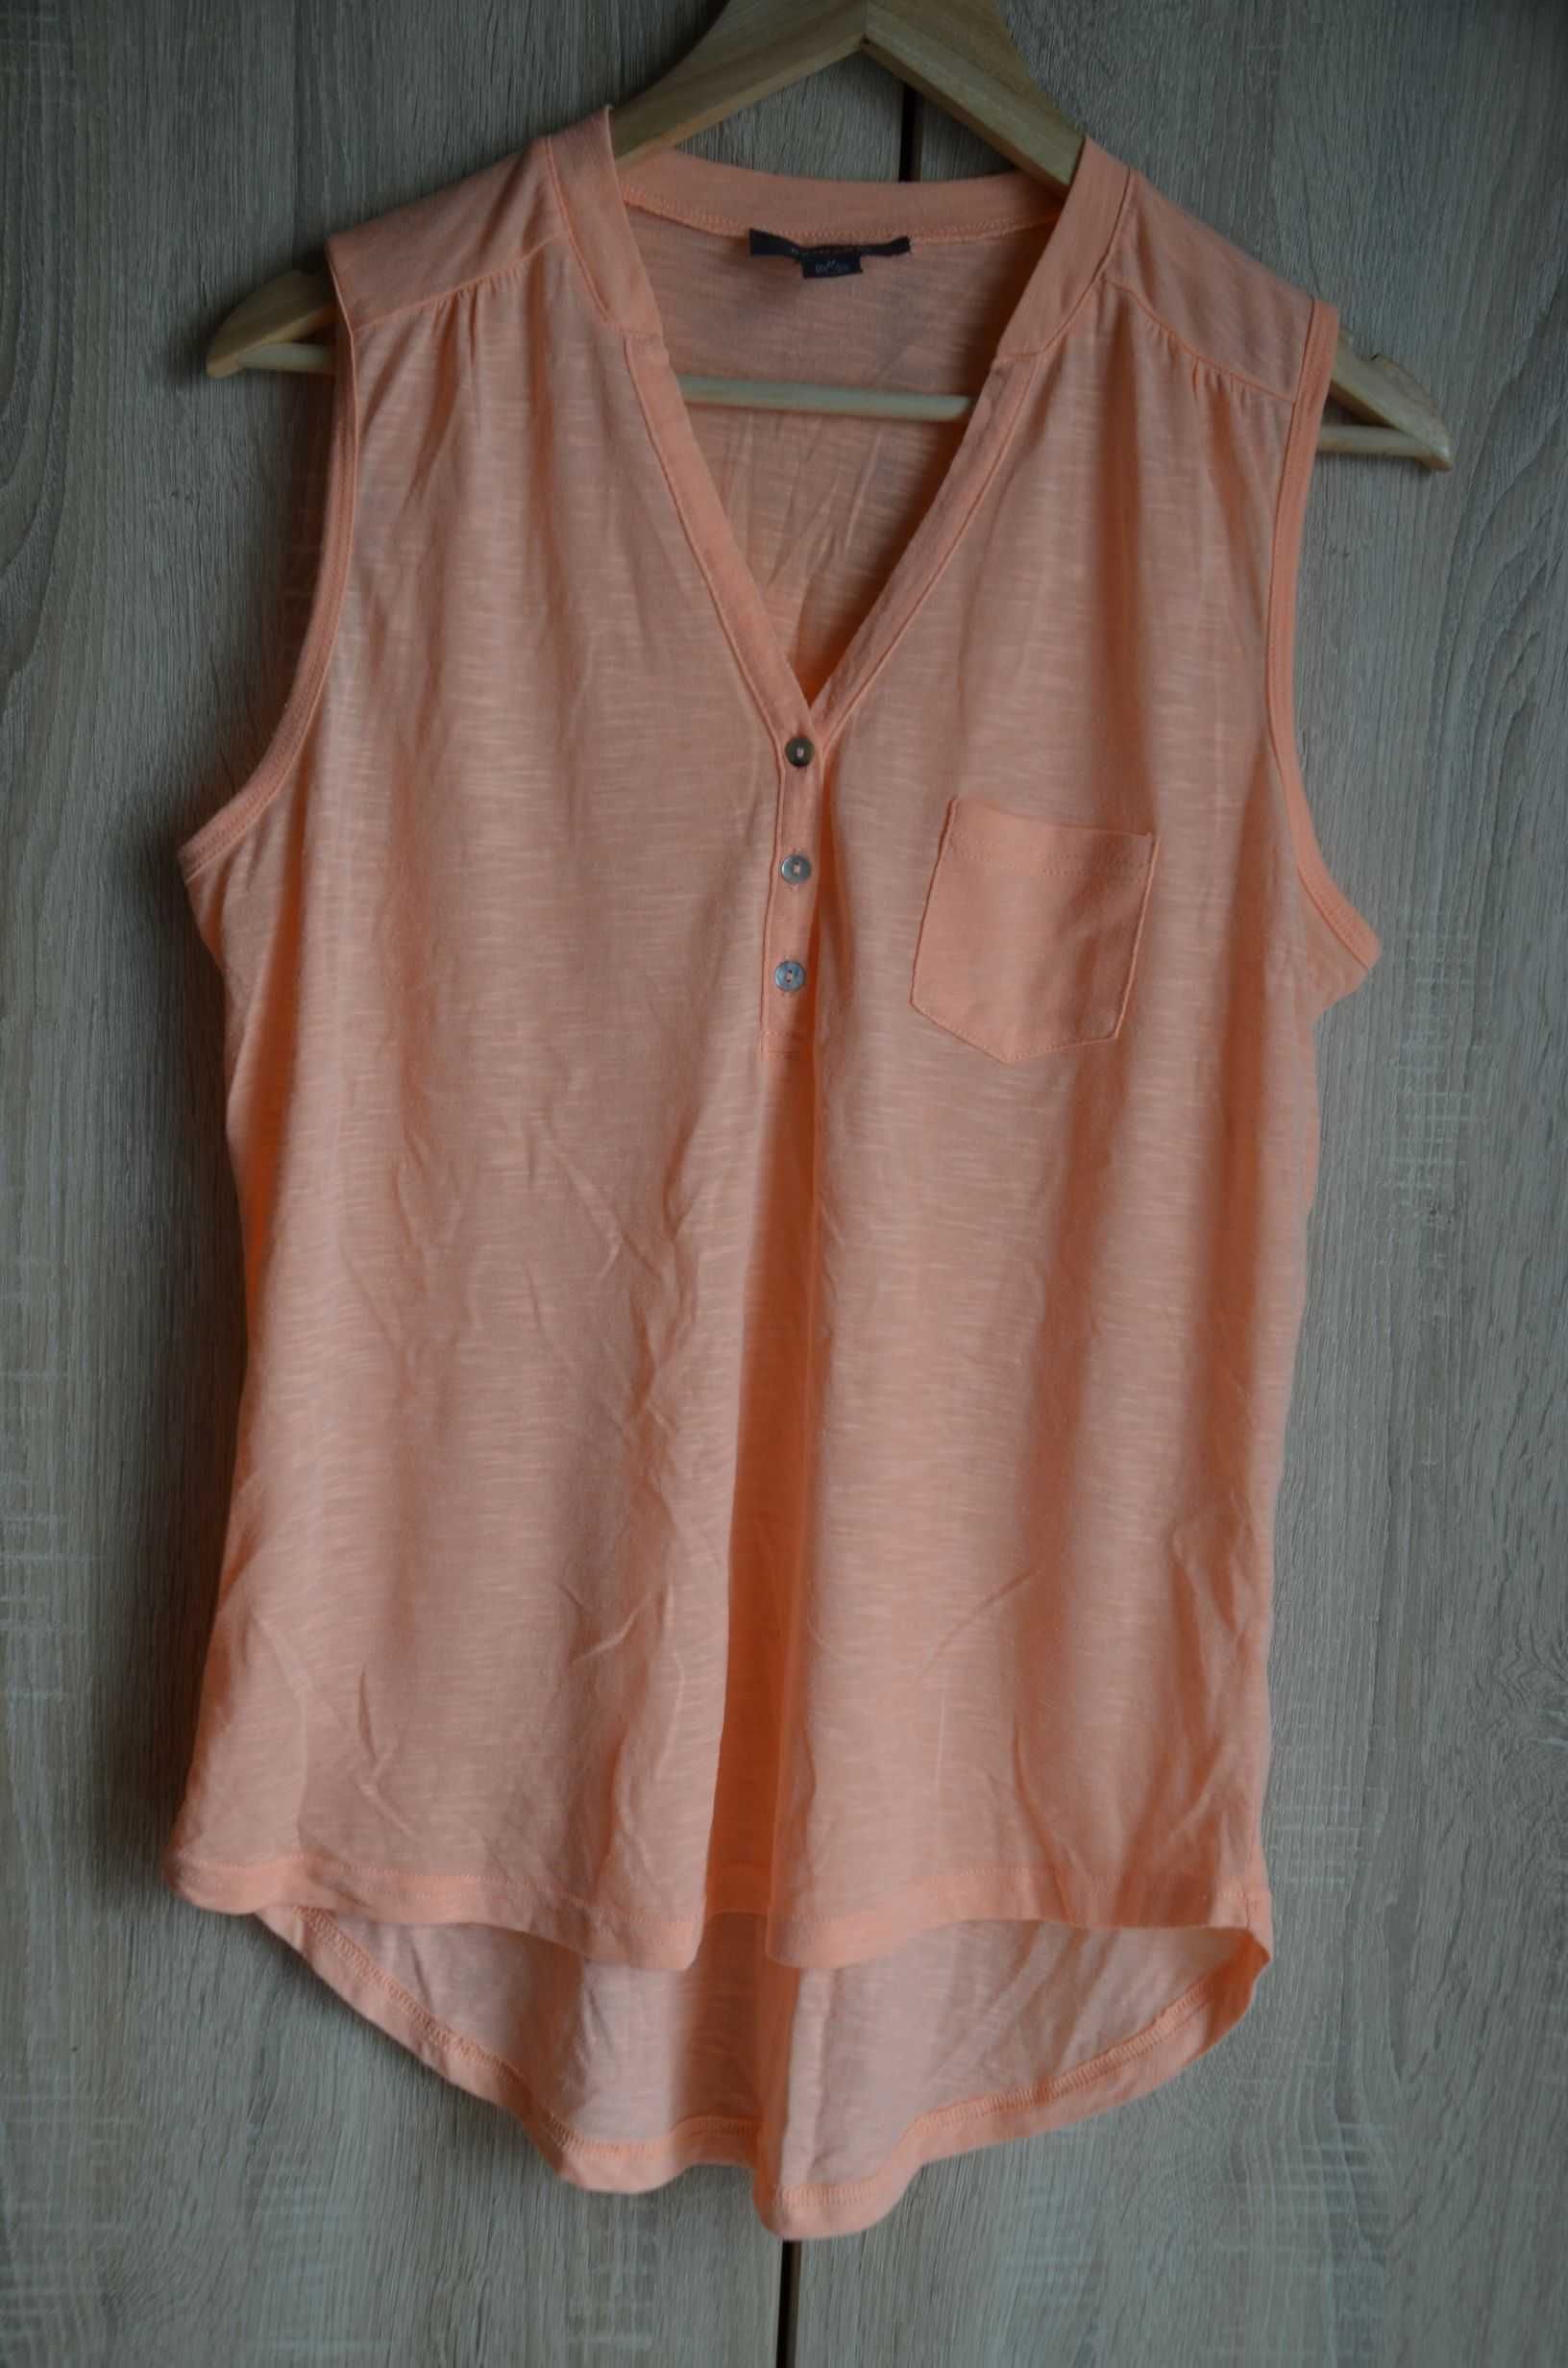 Bluzka bez rękawów pomarańczowa neonowa cienka letnia M L XL 40 42